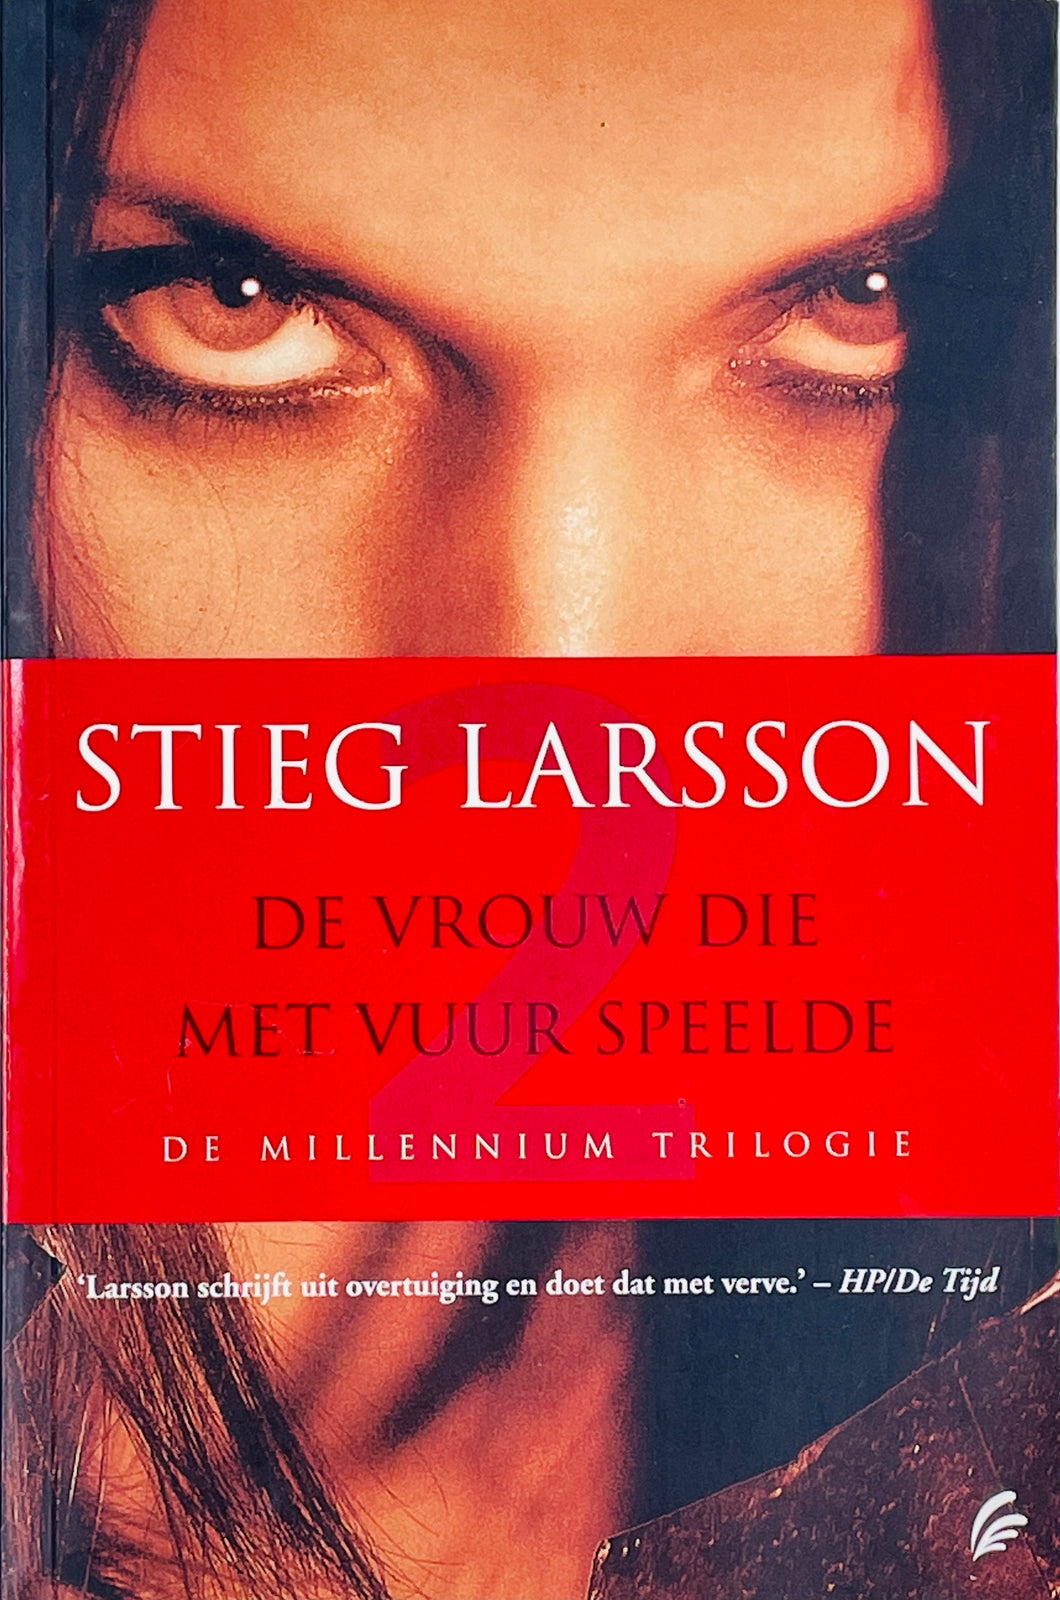 Larsson Stieg - Millennium 2: De vrouw die met vuur speelde